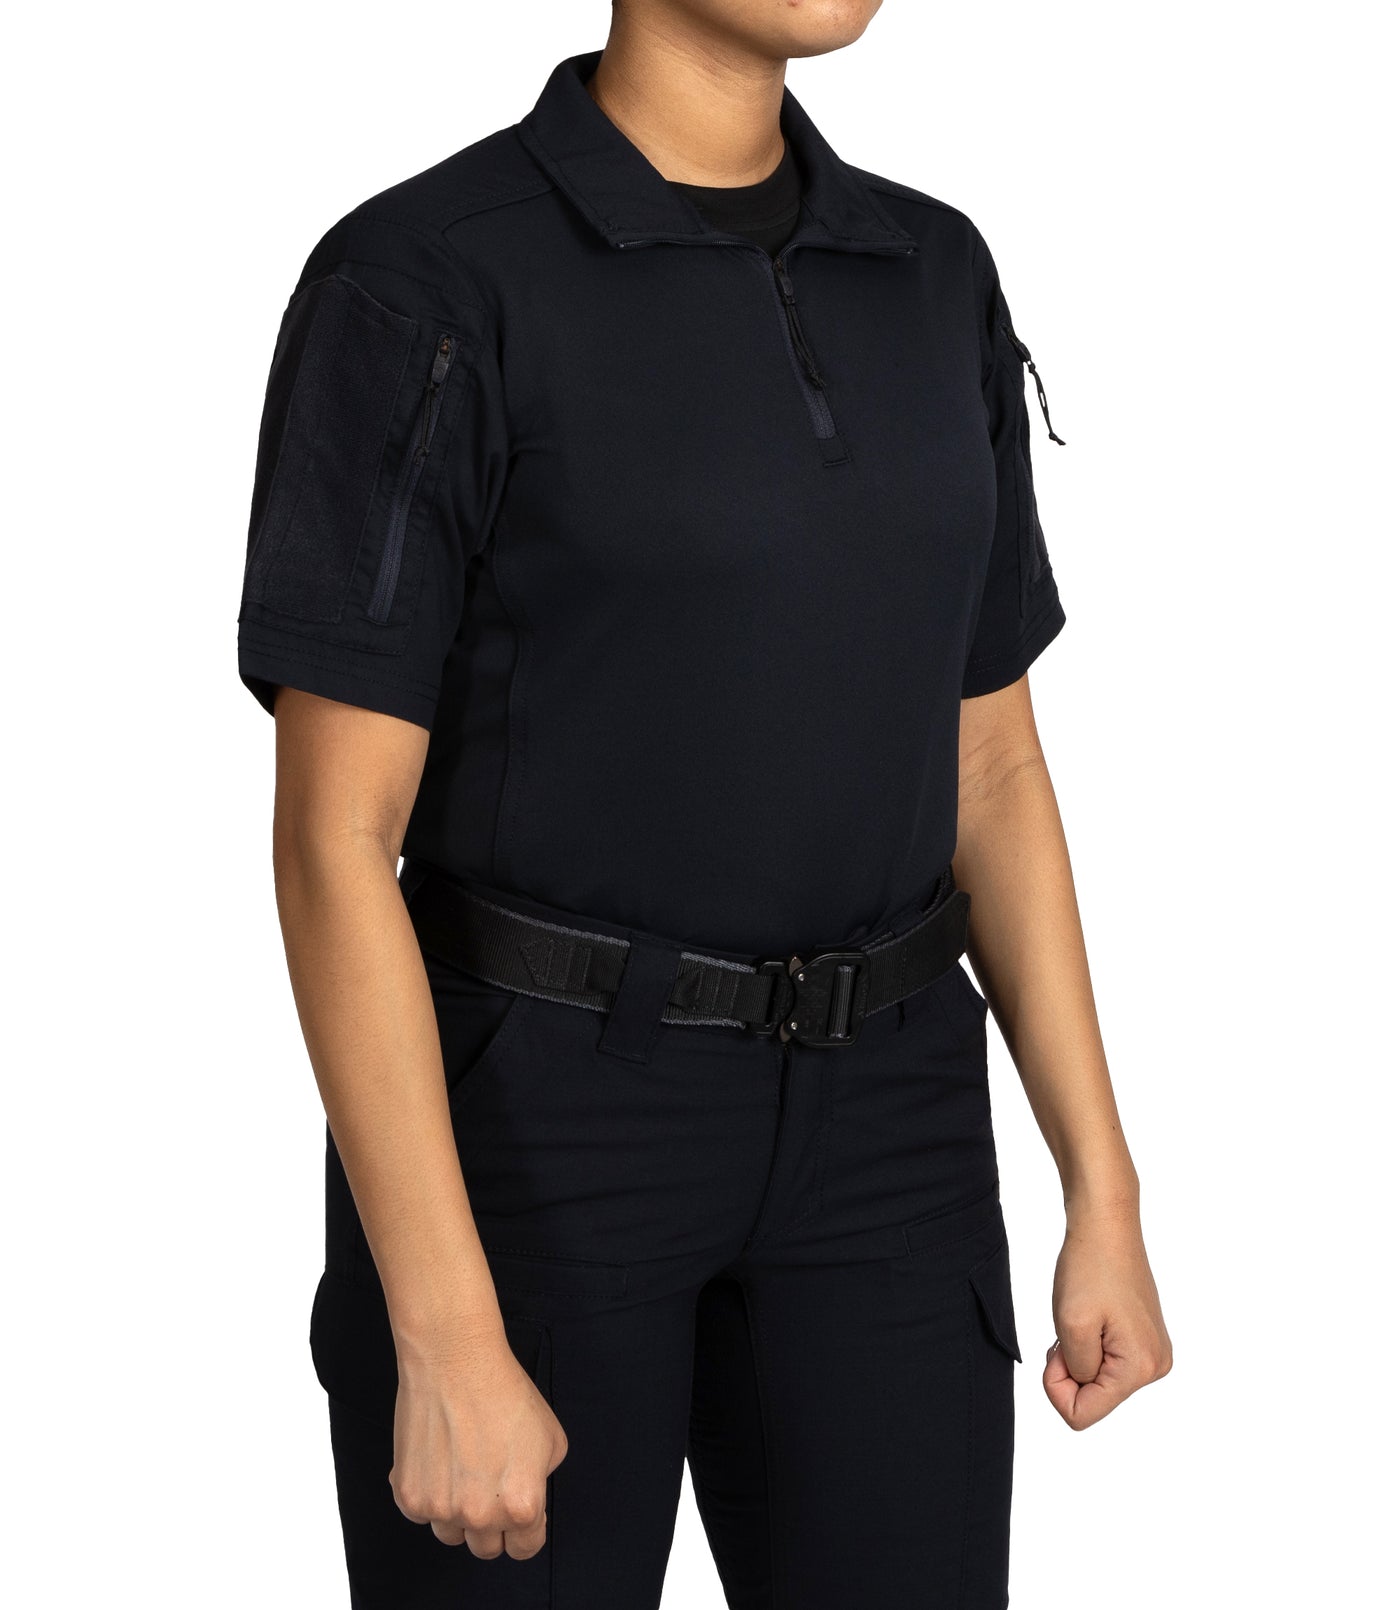 Women's V2 Responder Short Sleeve Shirt